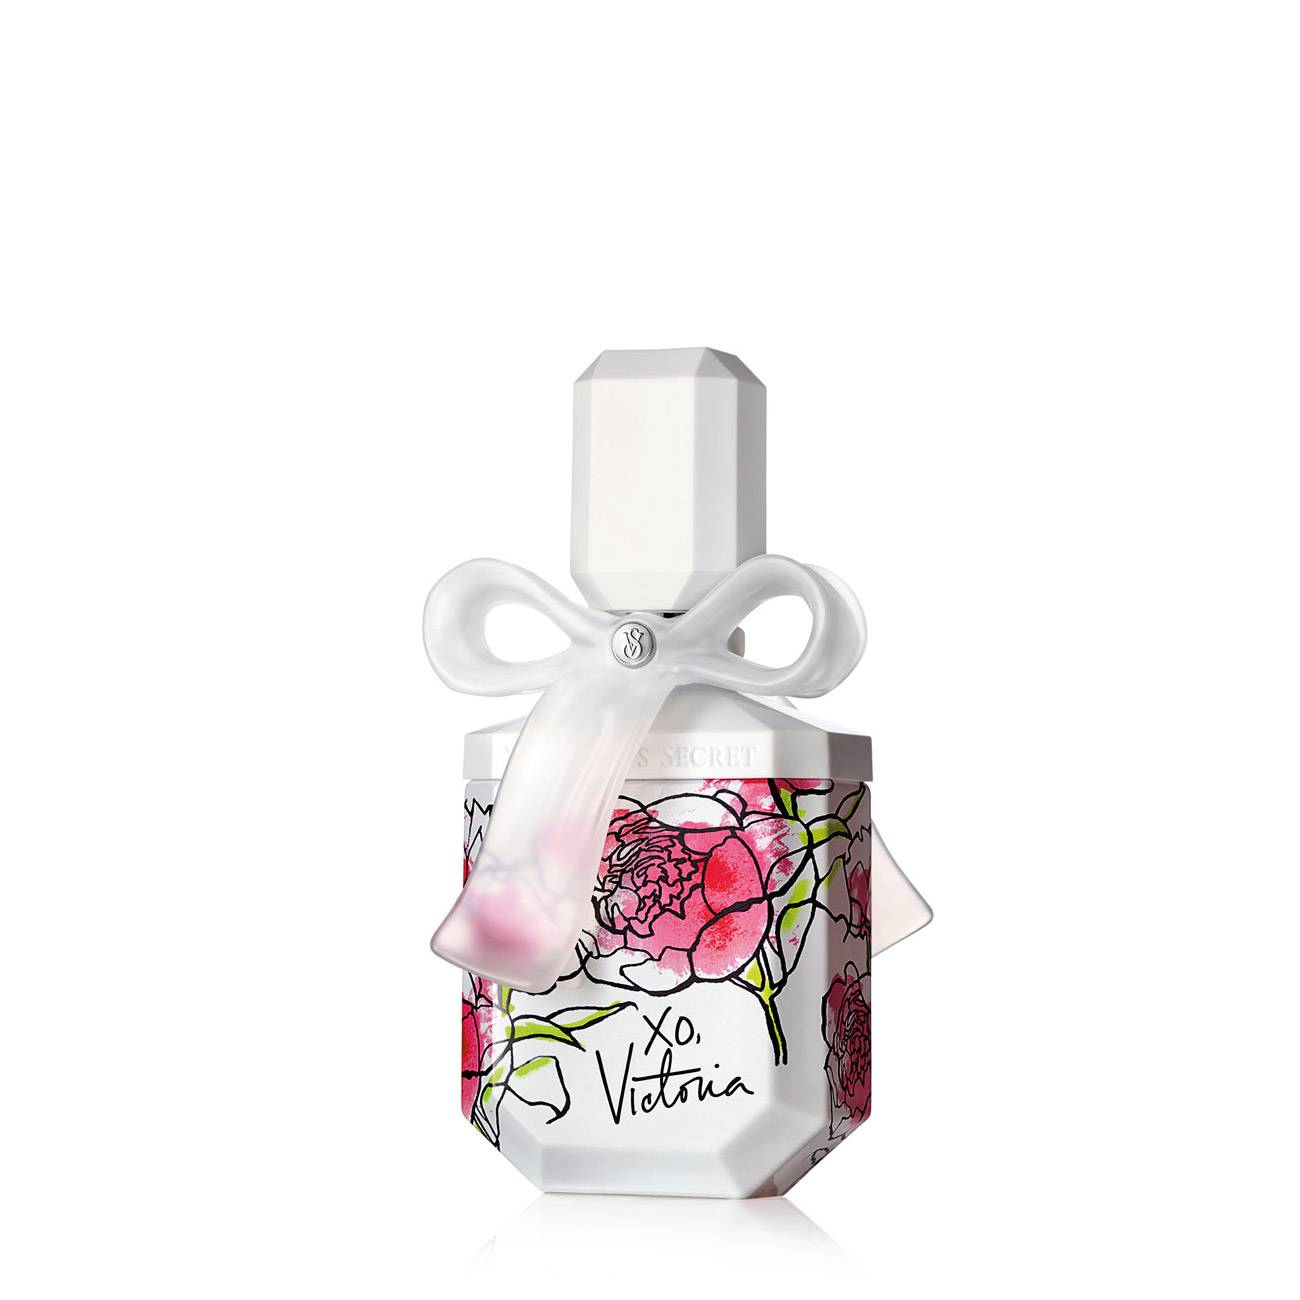 Apa de Parfum Victoria’s Secret XO VICTORIA 50ml cu comanda online